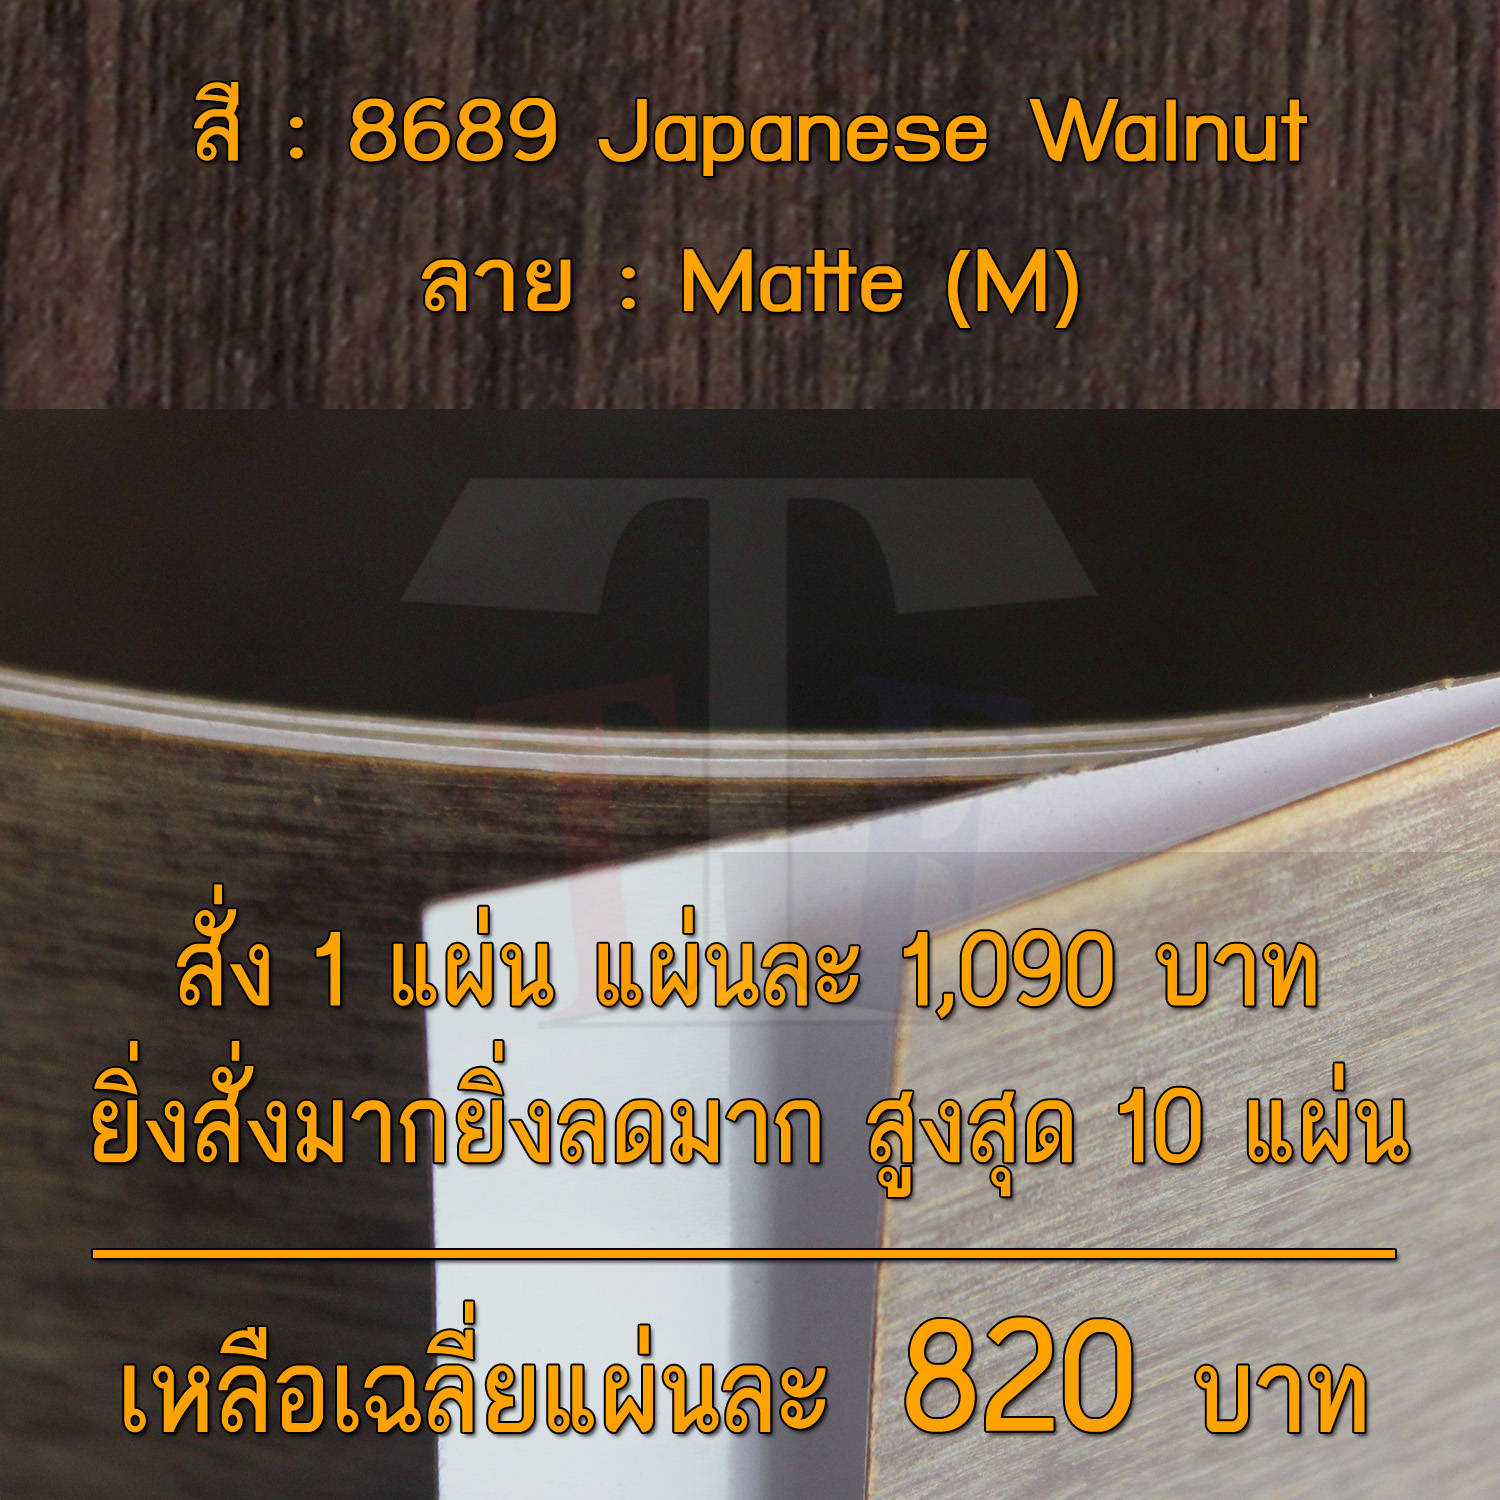 แผ่นโฟเมก้า แผ่นลามิเนต ยี่ห้อ TD Board ลายไม้วอลนัท รหัส 8689 Japanese Walnut พื้นผิวลาย Matte (M) ขนาด 1220 x 2440 มม. หนา 0.70 มม. ใช้สำหรับงานตกแต่งภายใน งานปิดผิวเฟอร์นิเจอร์ ผนัง และอื่นๆ เพื่อเพิ่มความสวยงาม formica laminate 8689M